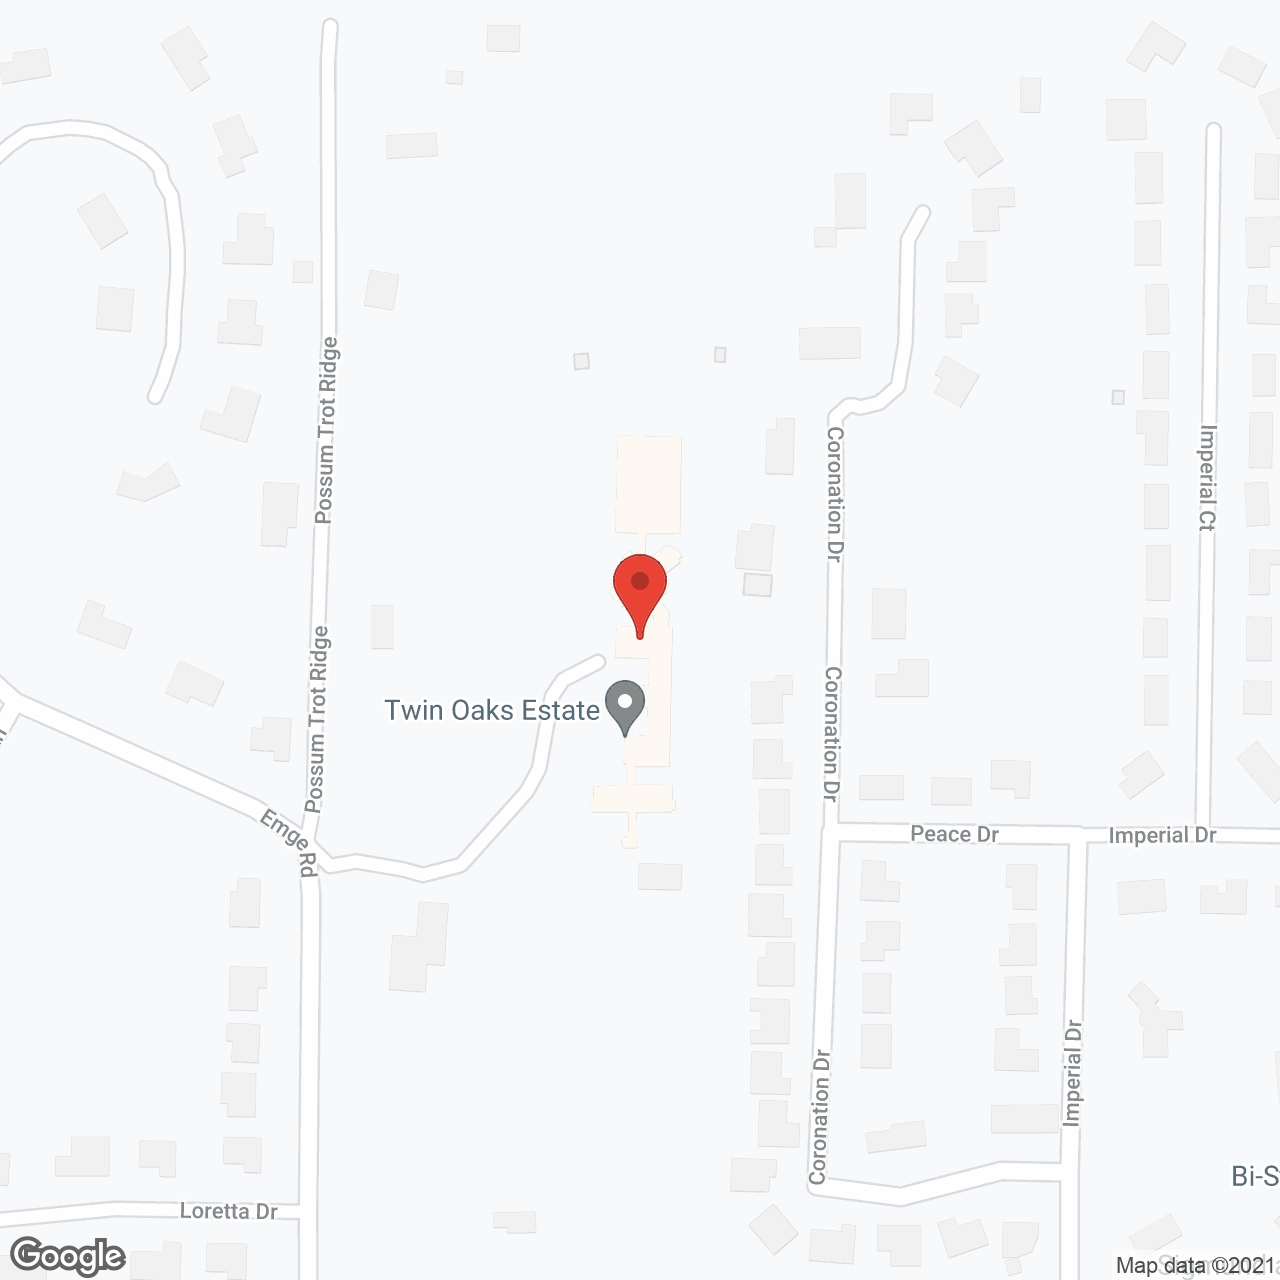 Twin Oaks Estate in google map